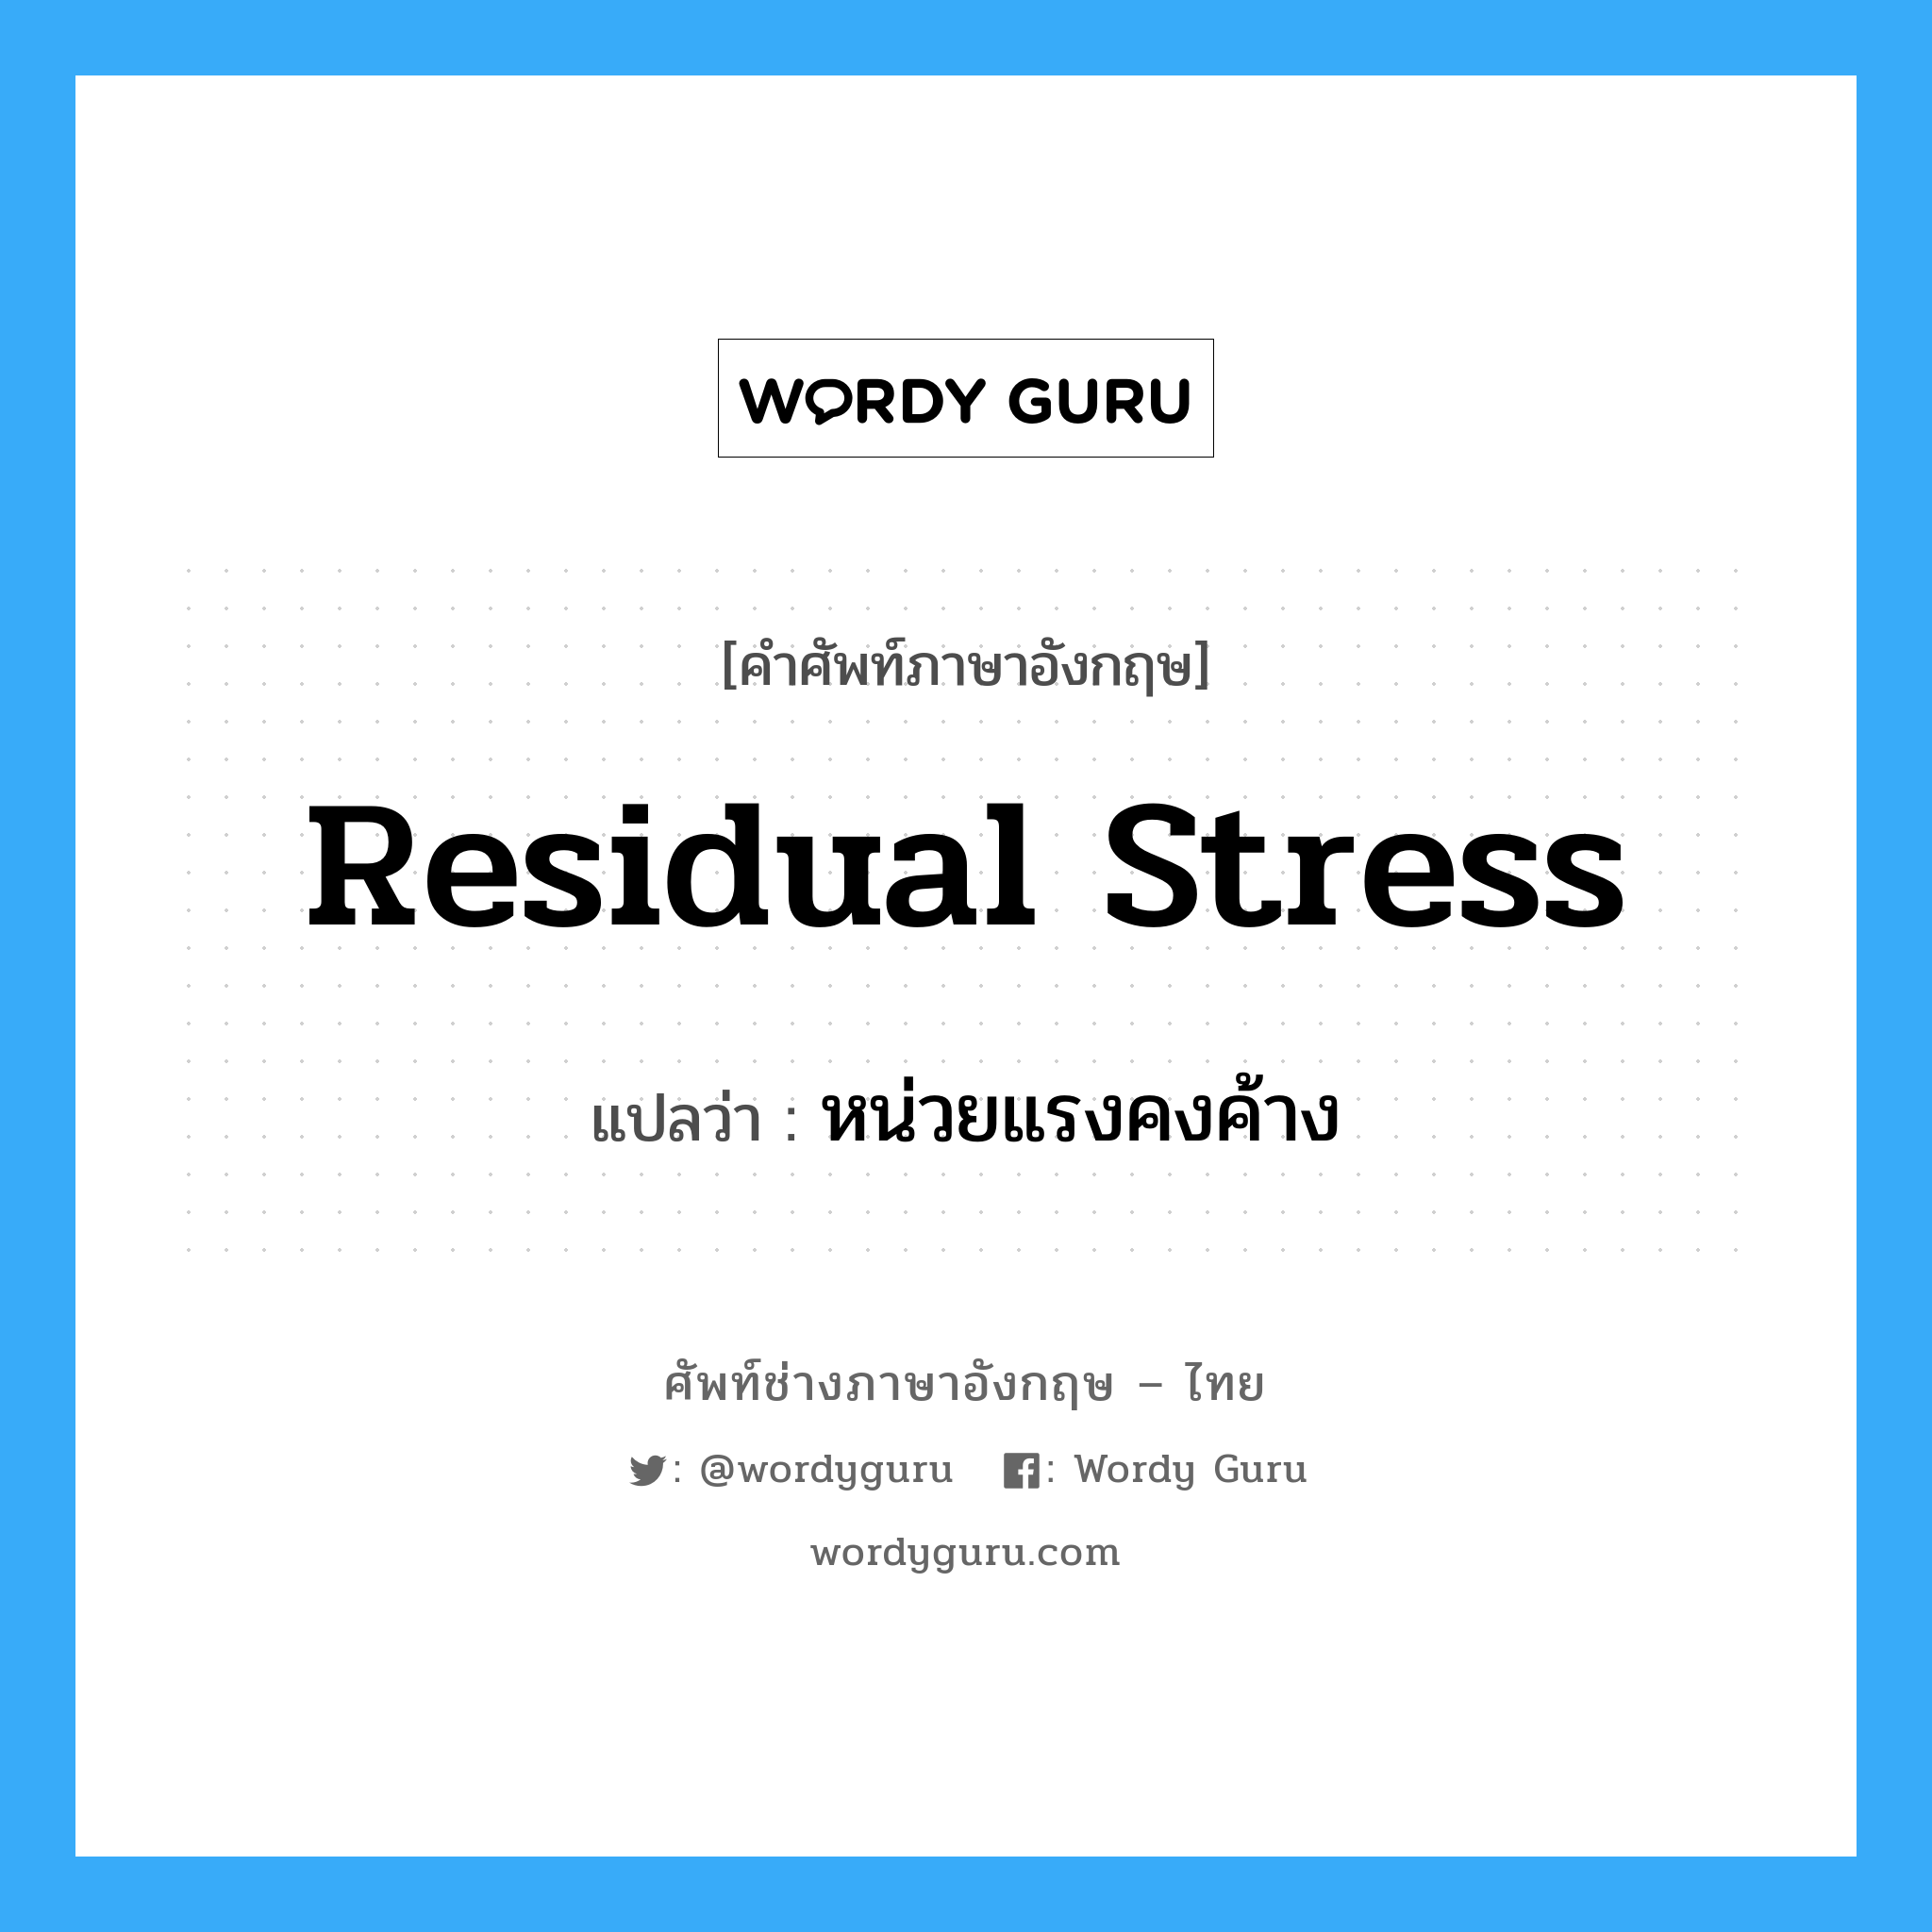 หน่วยแรงคงค้าง ภาษาอังกฤษ?, คำศัพท์ช่างภาษาอังกฤษ - ไทย หน่วยแรงคงค้าง คำศัพท์ภาษาอังกฤษ หน่วยแรงคงค้าง แปลว่า residual stress